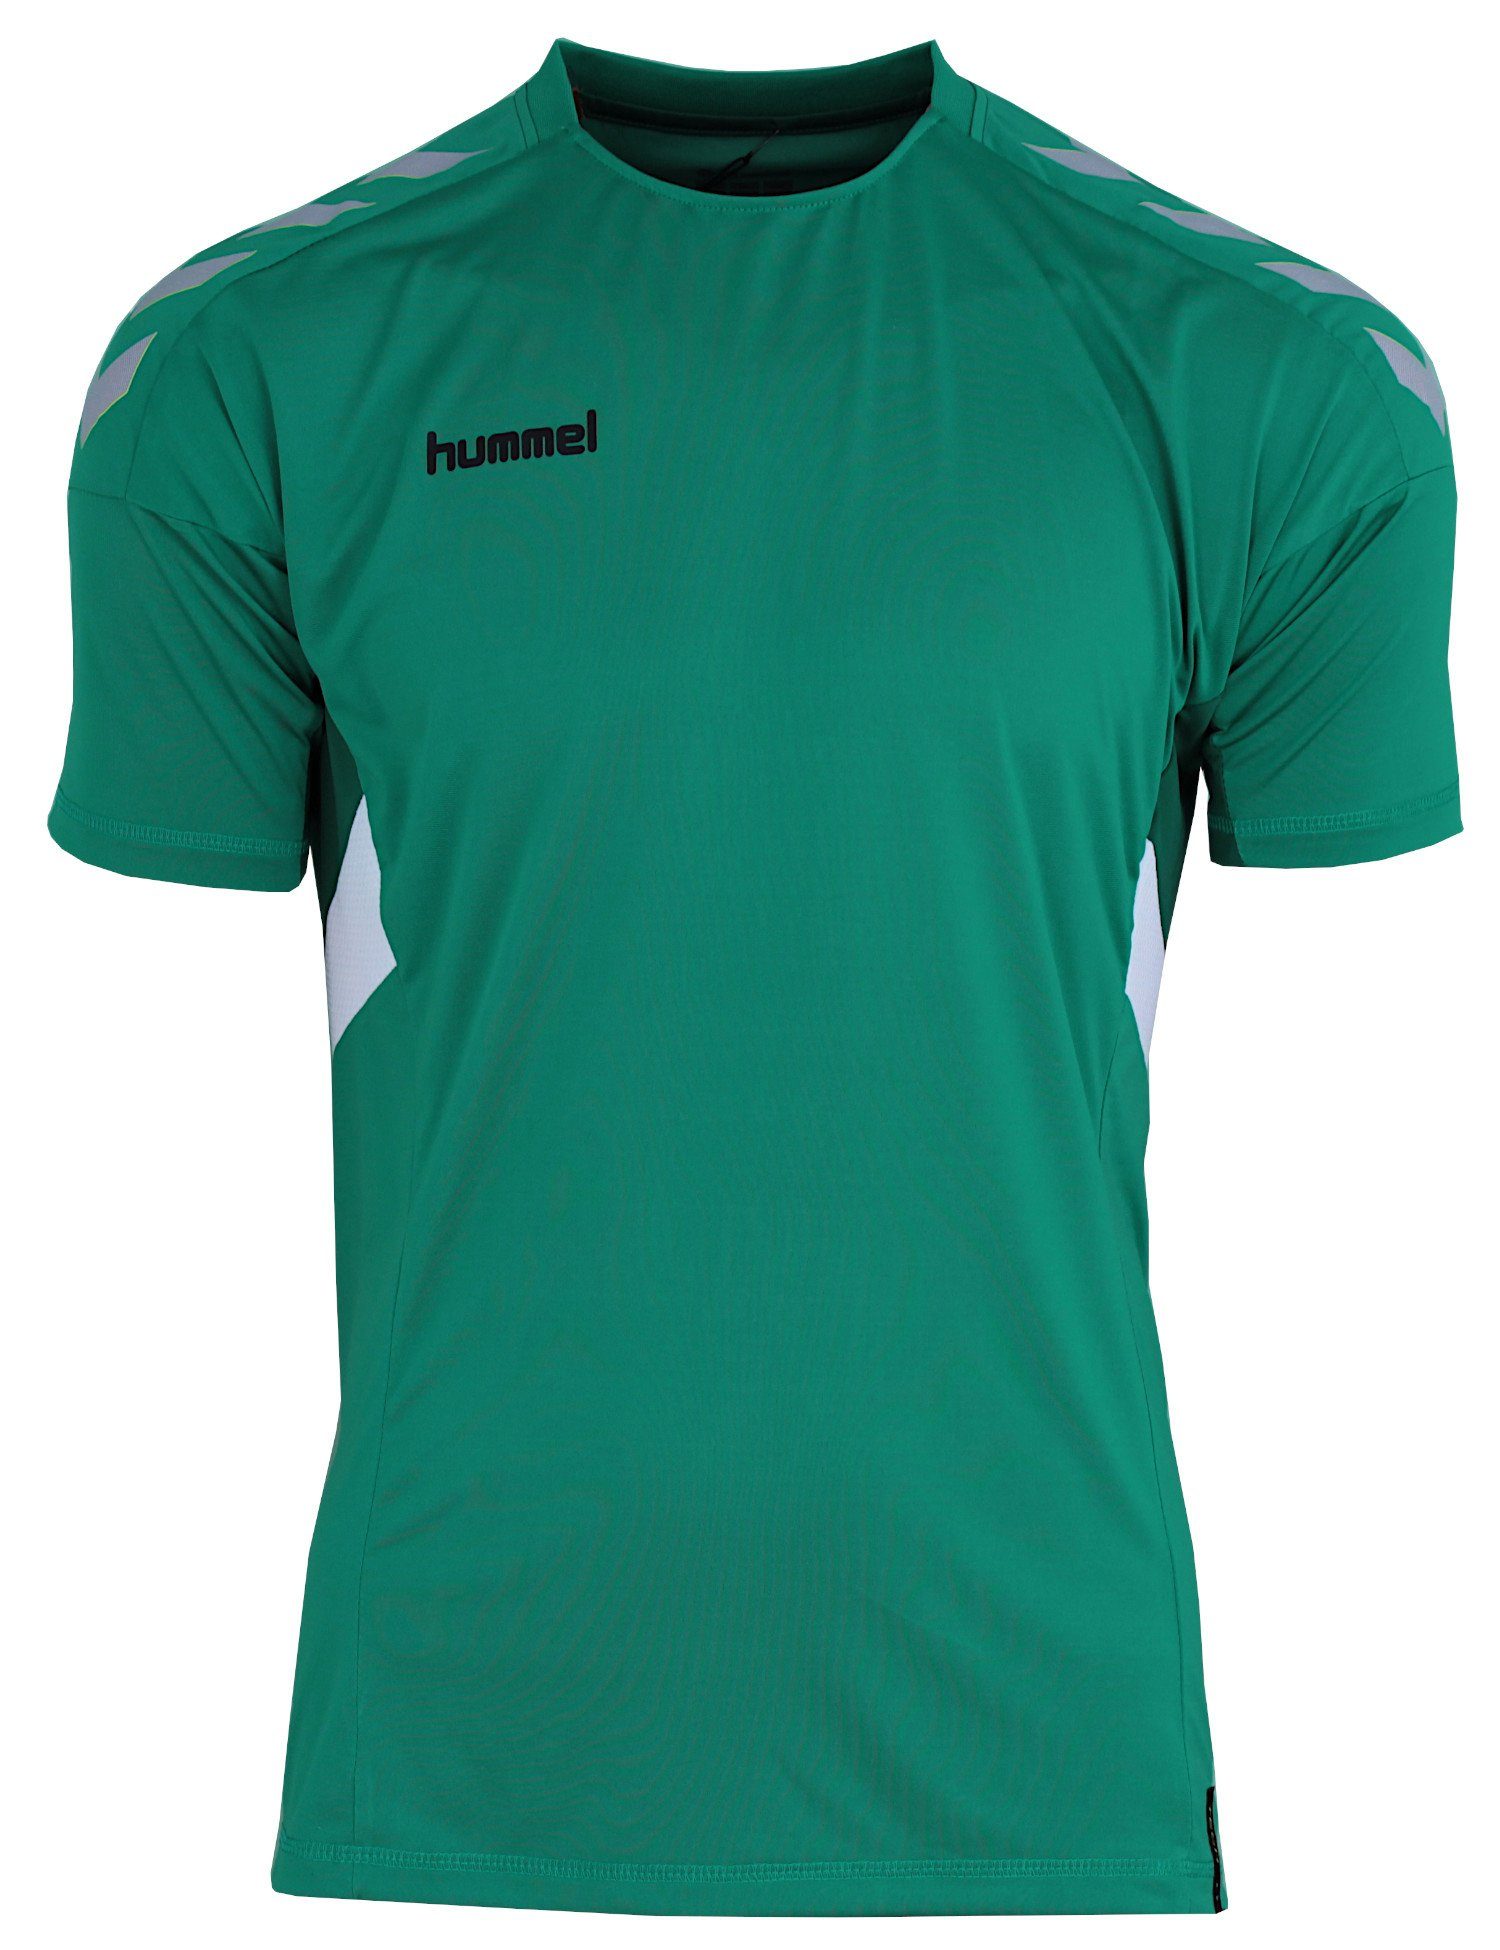 hummel Trainingsshirt schnelltrocknend Optimale (Sports Tech Trikot Move Shirt Green) Atmungsaktivität, Grün